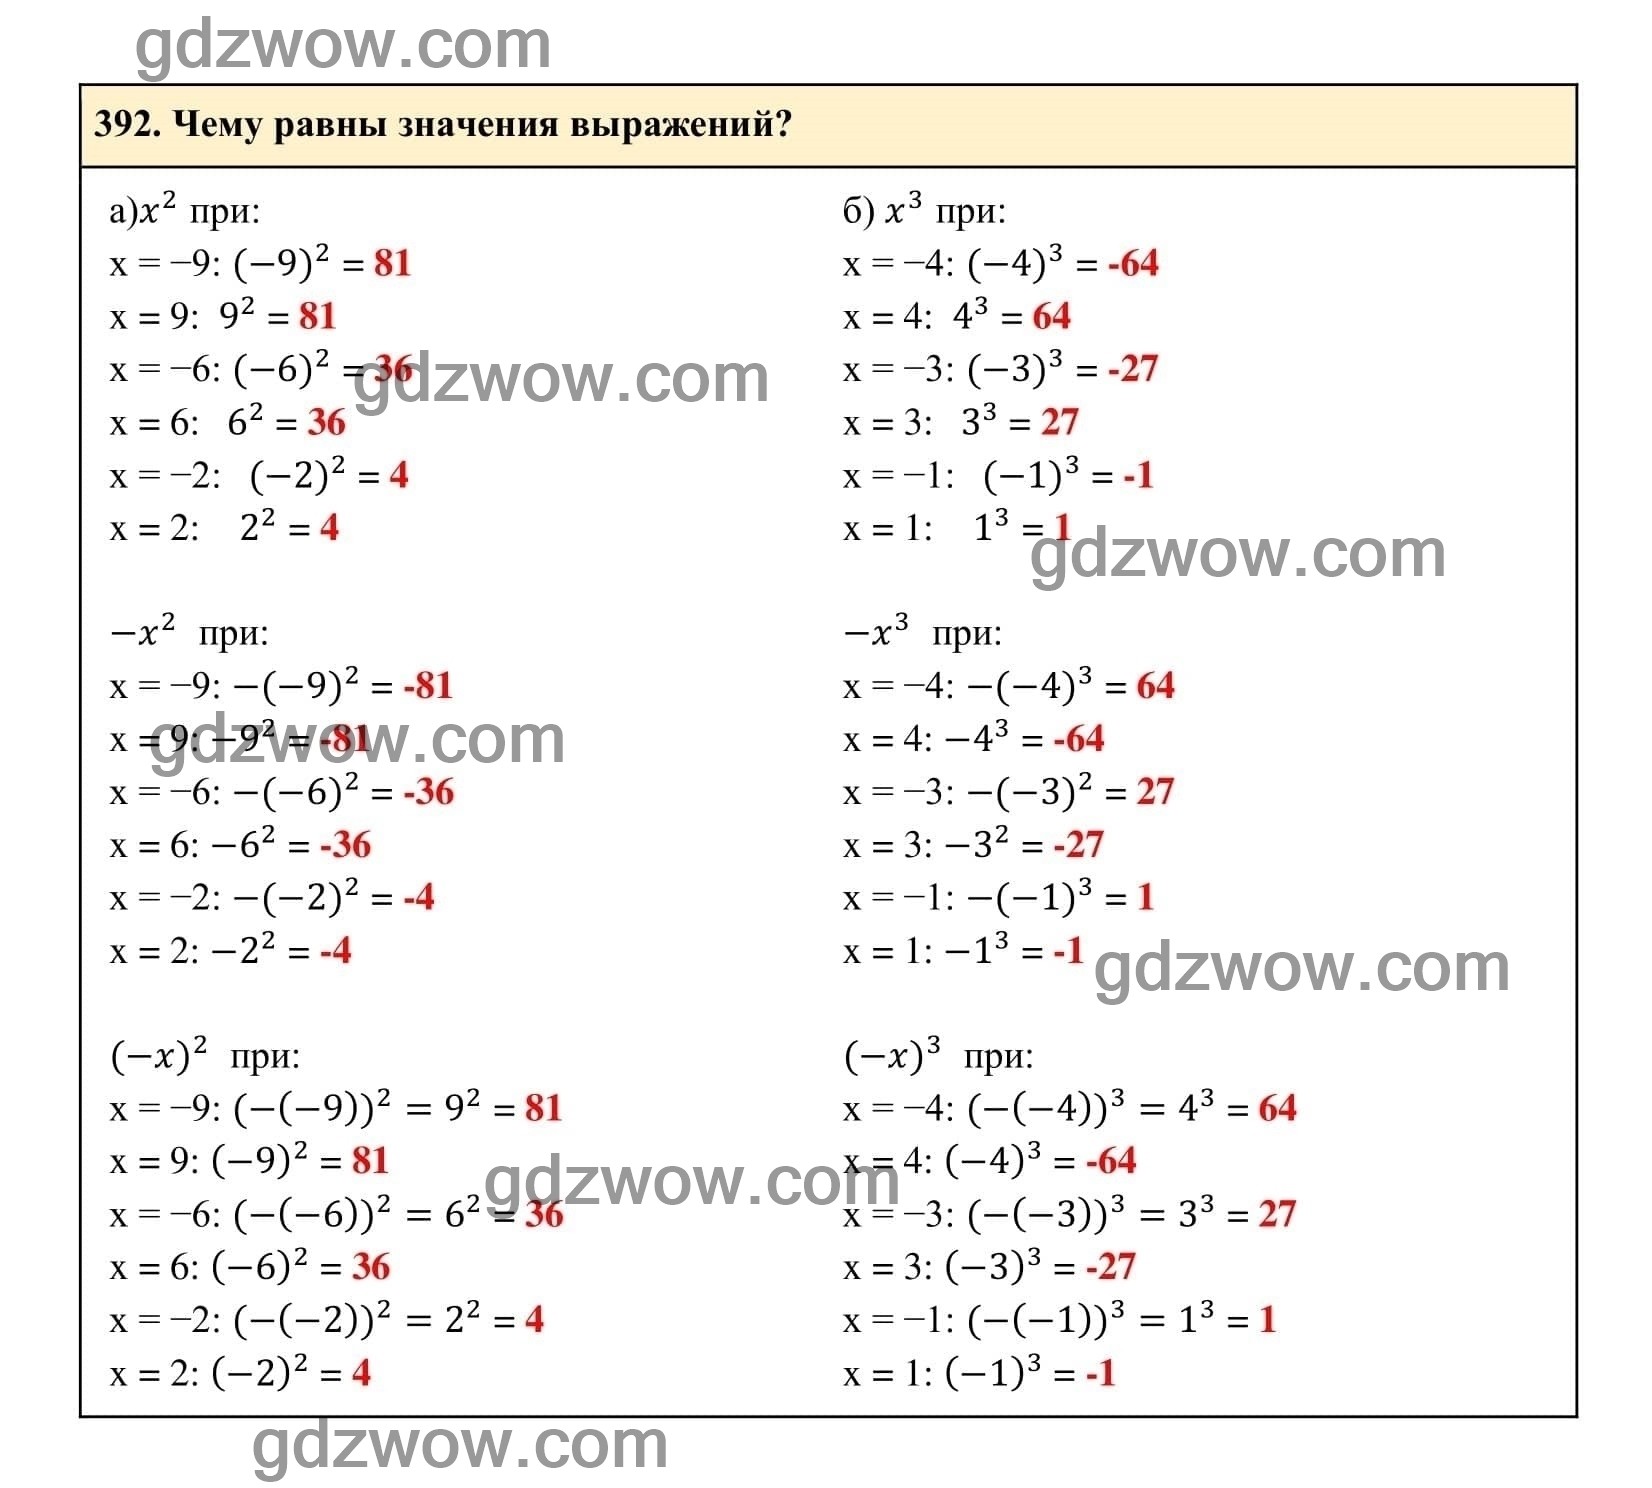 Упражнение 392 - ГДЗ по Алгебре 7 класс Учебник Макарычев (решебник) - GDZwow